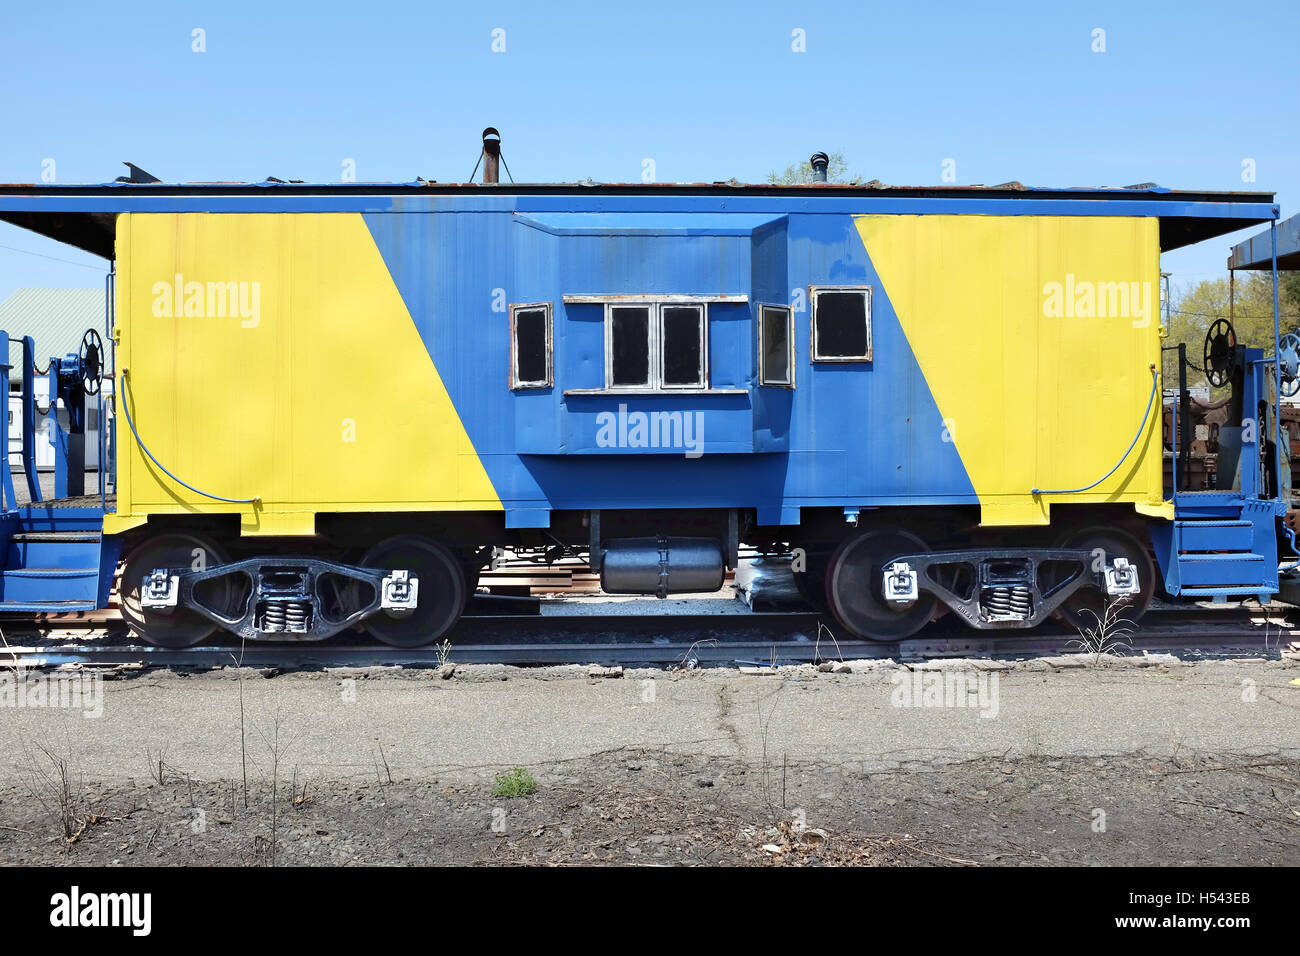 Coche tren amarillo y azul de Riverhead, Long Island, Nueva York. Foto de stock